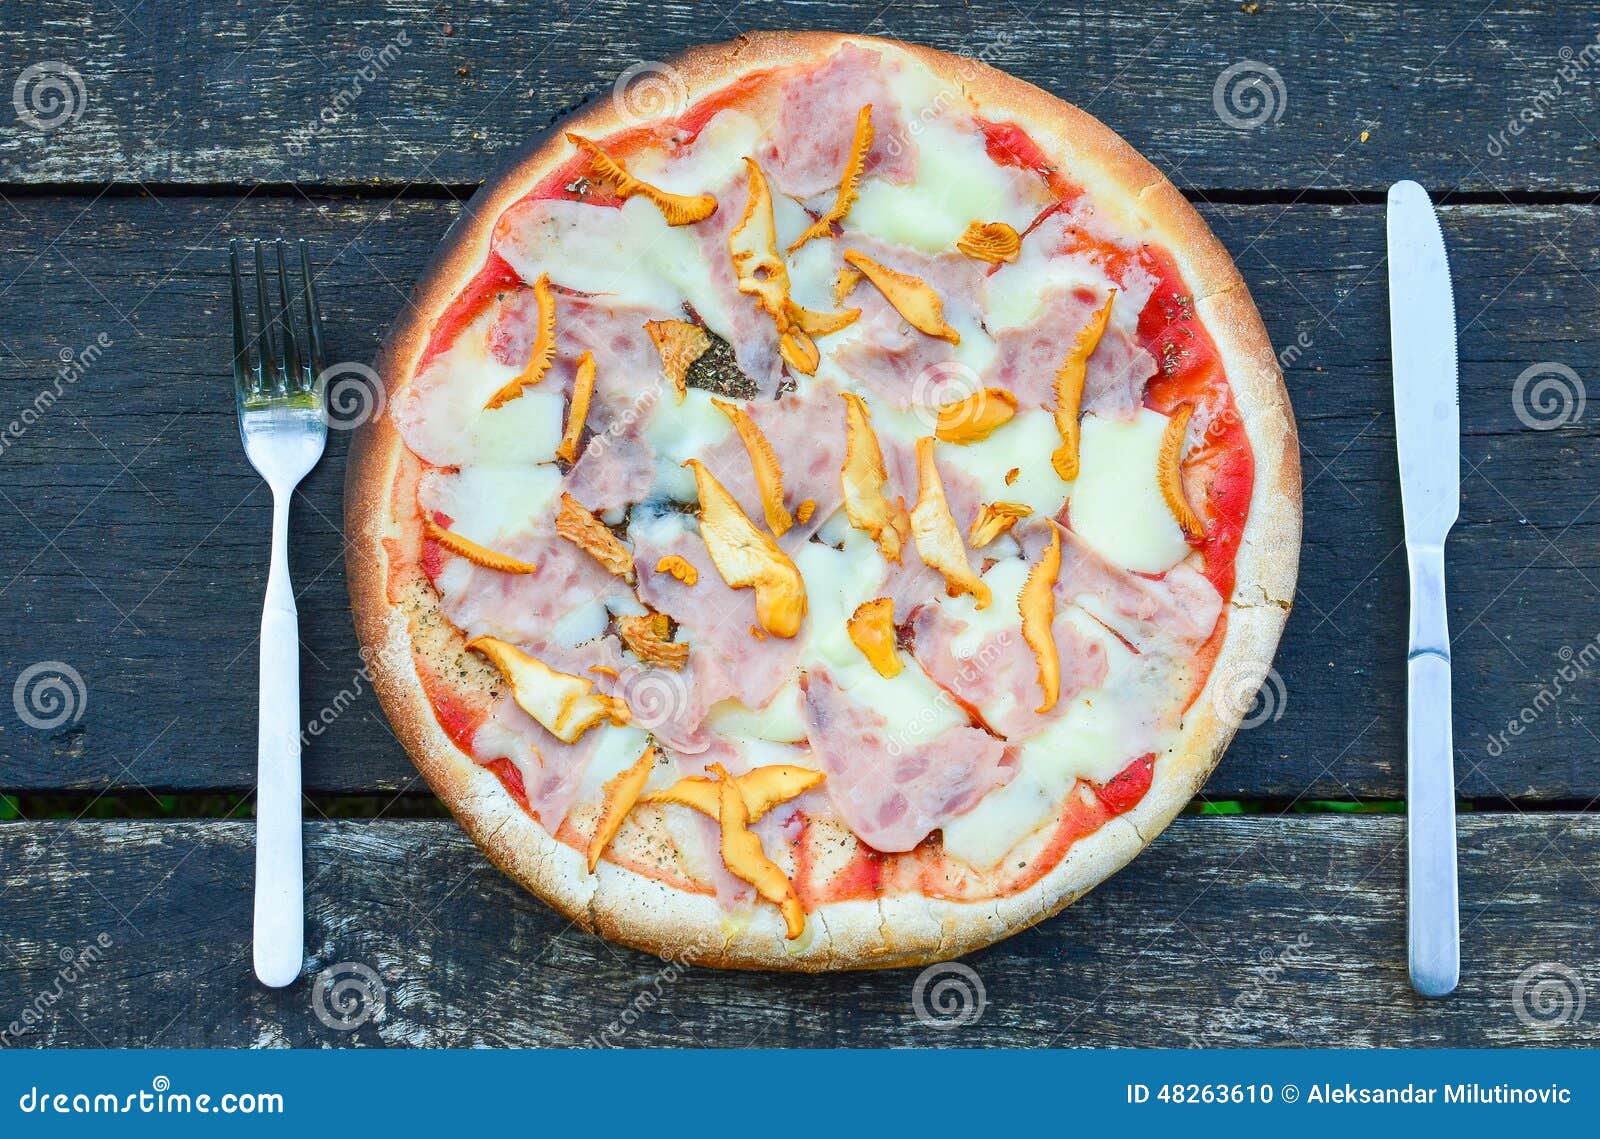 пицца с лисичками рецепт с фото пошагово фото 27